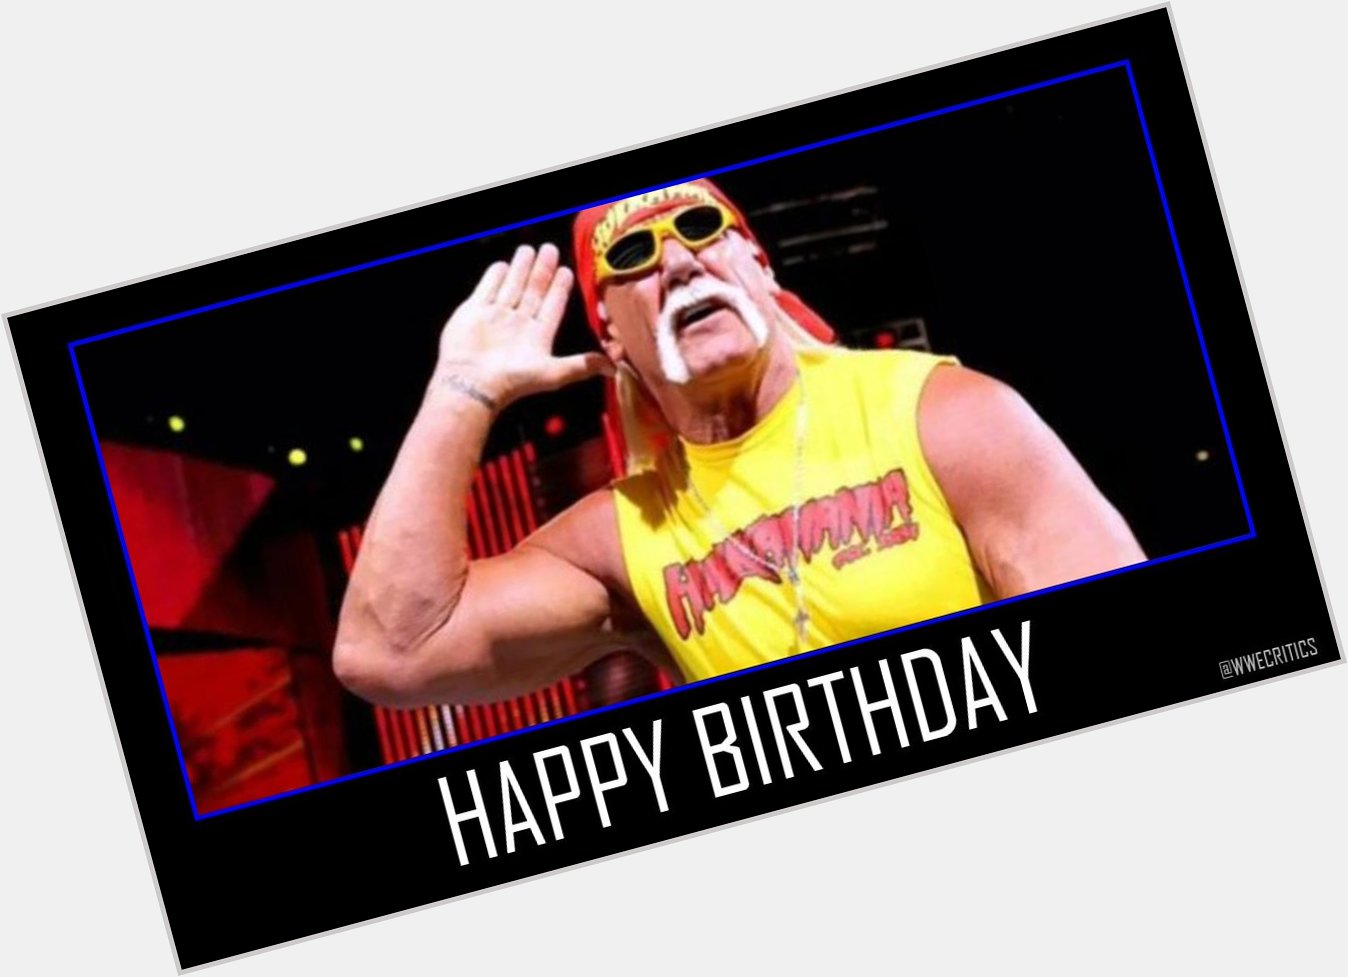 Happy 66th Birthday to Hulk Hogan. 